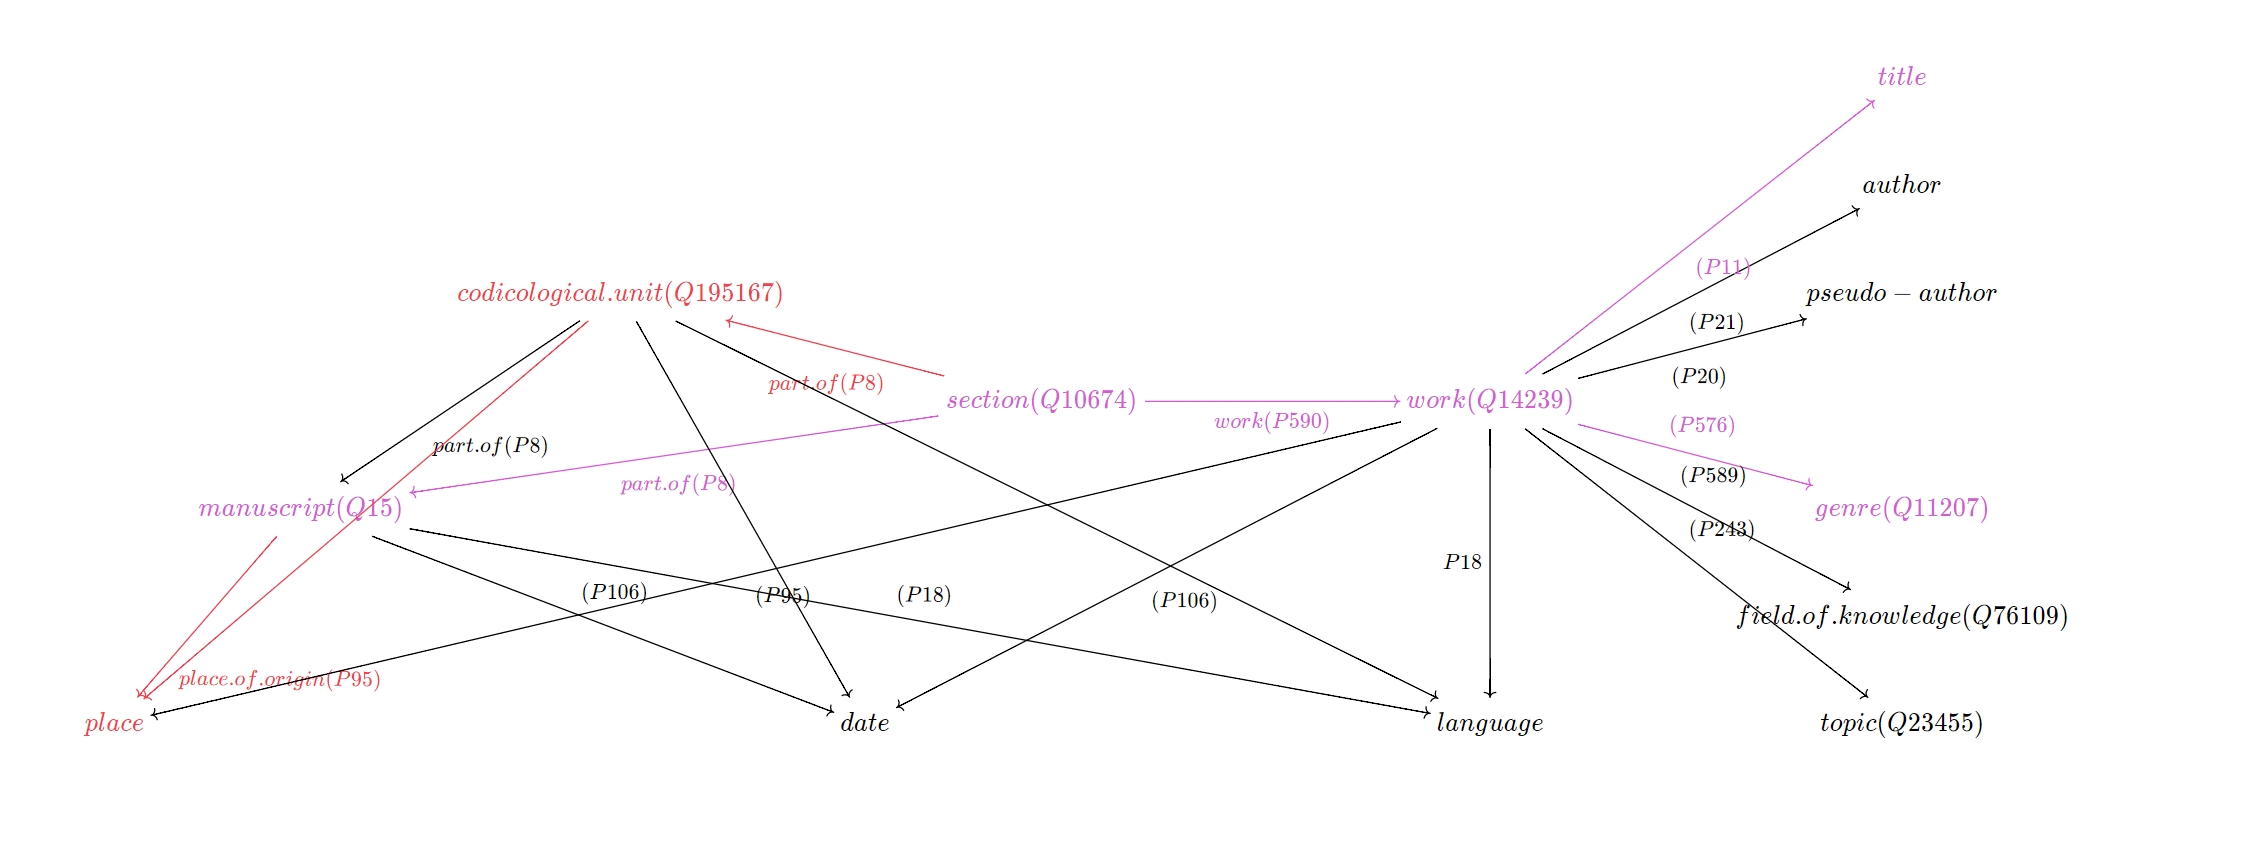 Data model for codices (work, genre etc.).jpg